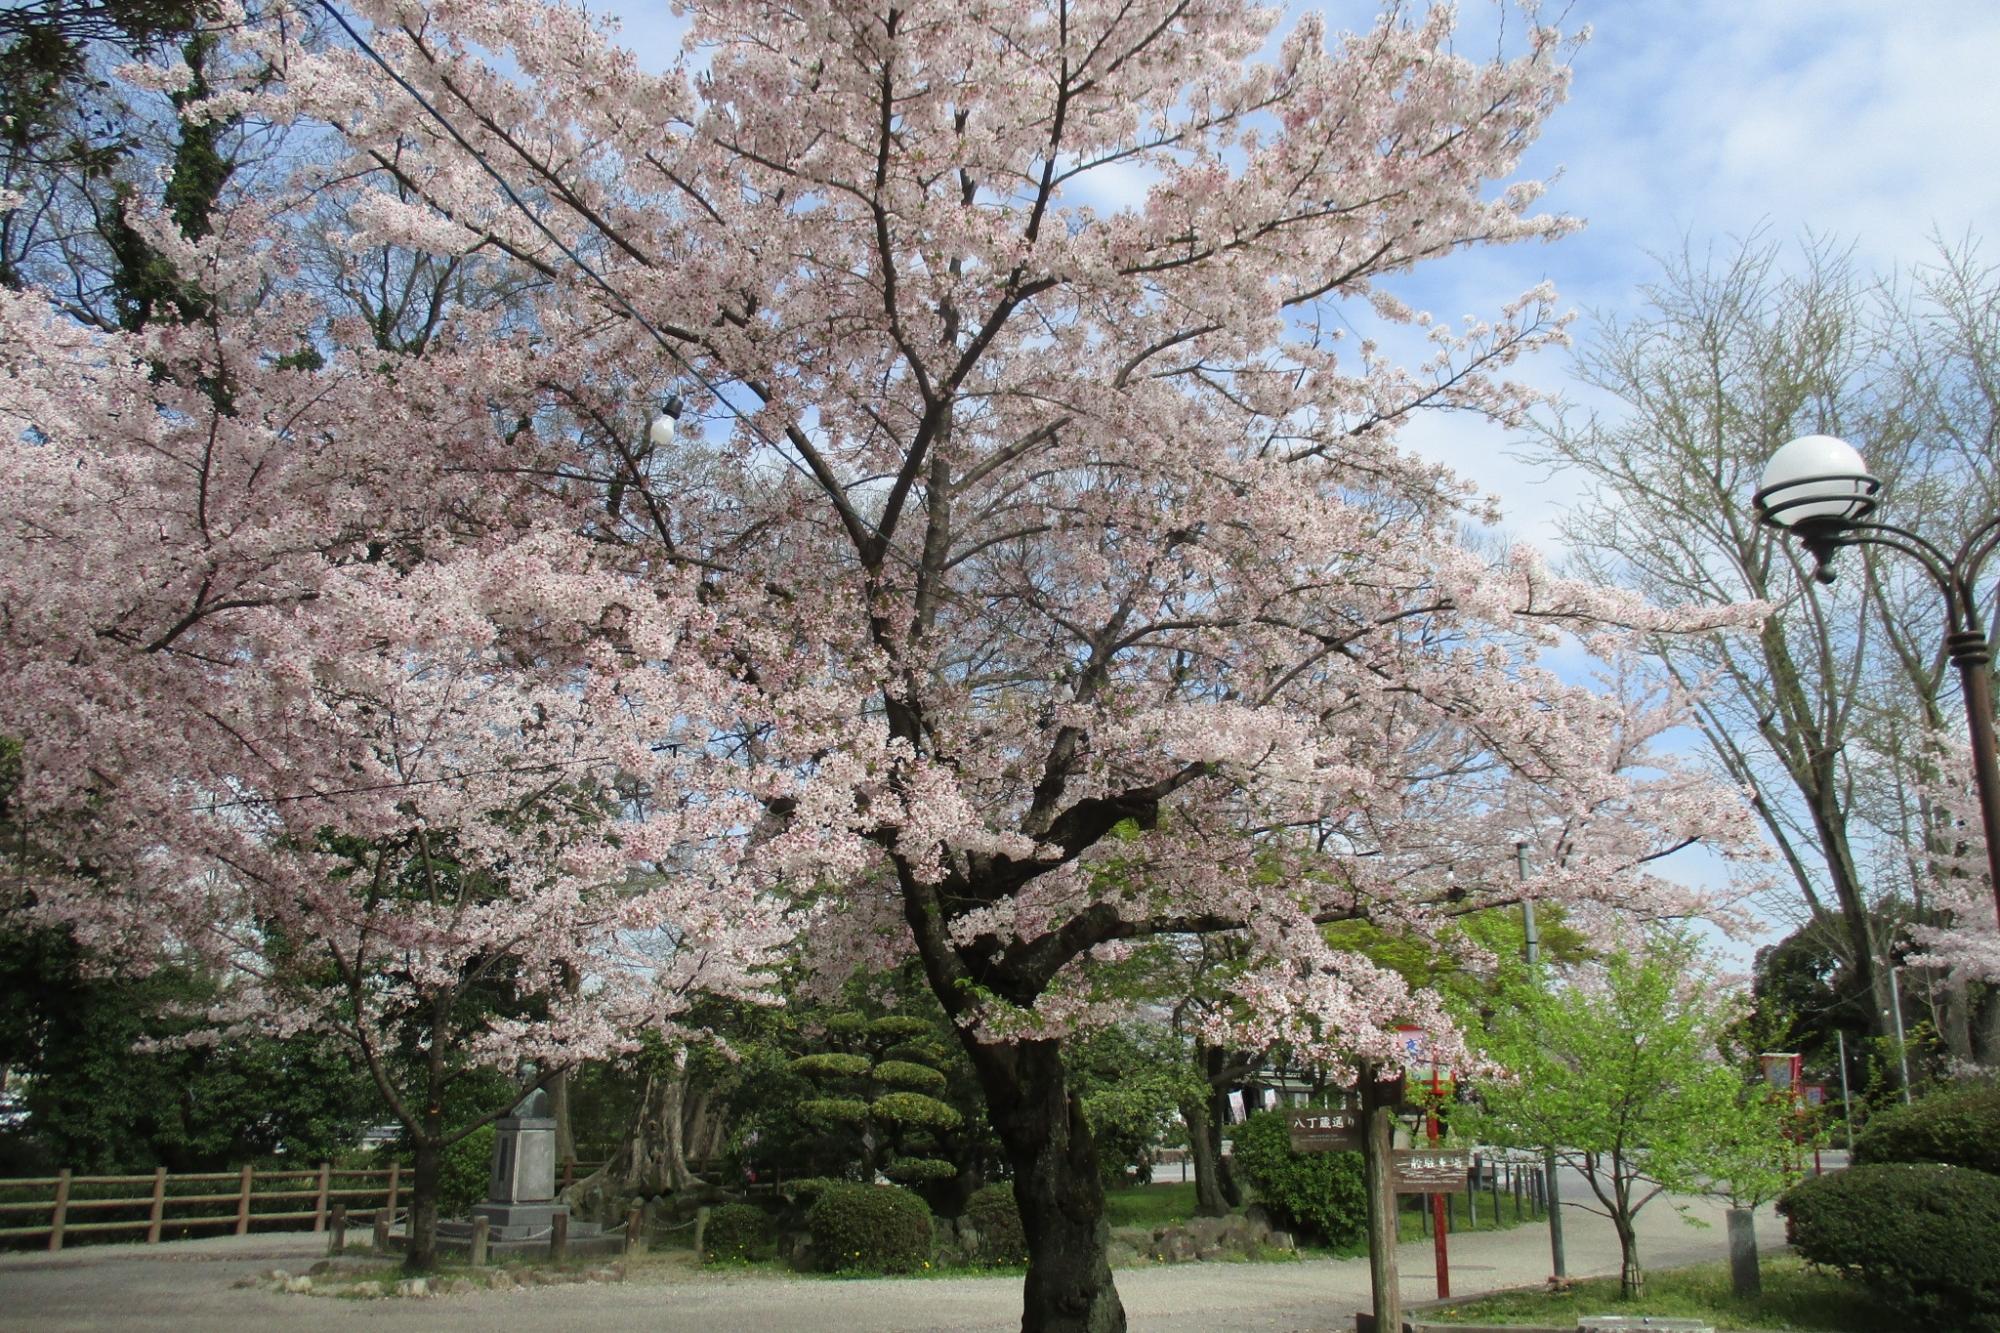 2017年4月13日の桜の開花状況を公開しました。